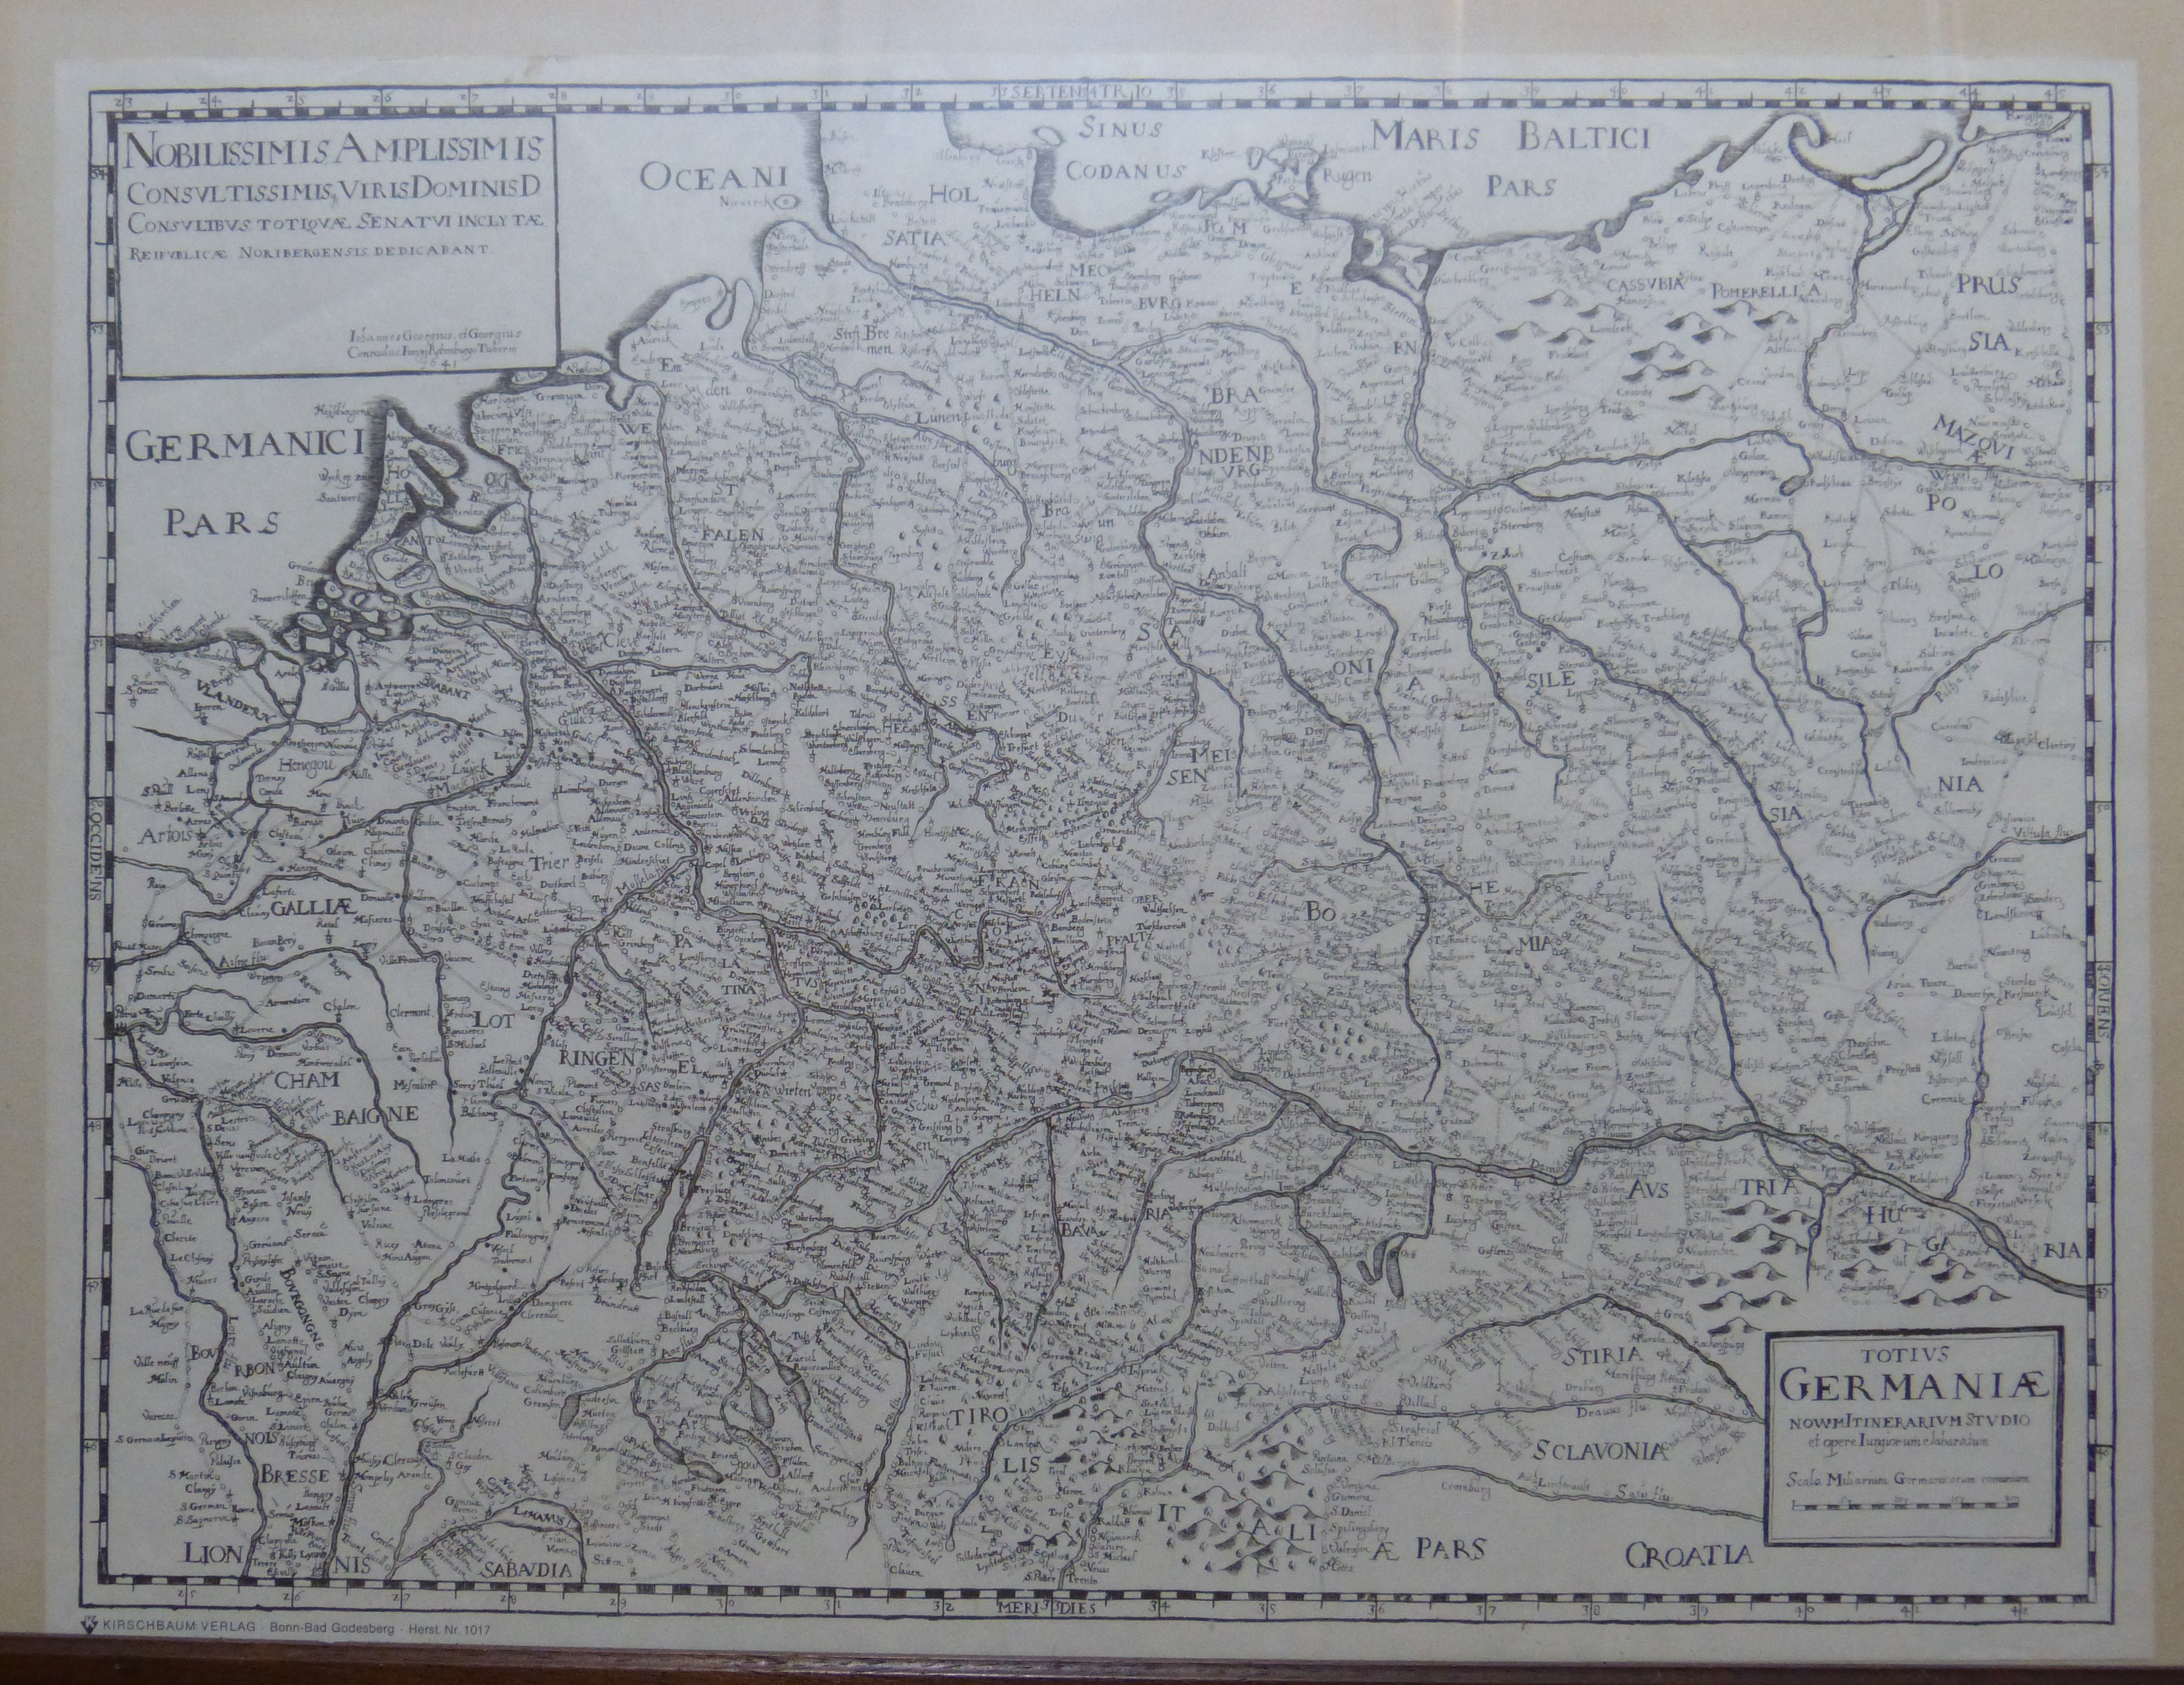 Landkarte "Totivs Germaniae" von 1641 (Nachdruck) (Städt. Hellweg-Museum Geseke CC BY-NC-SA)